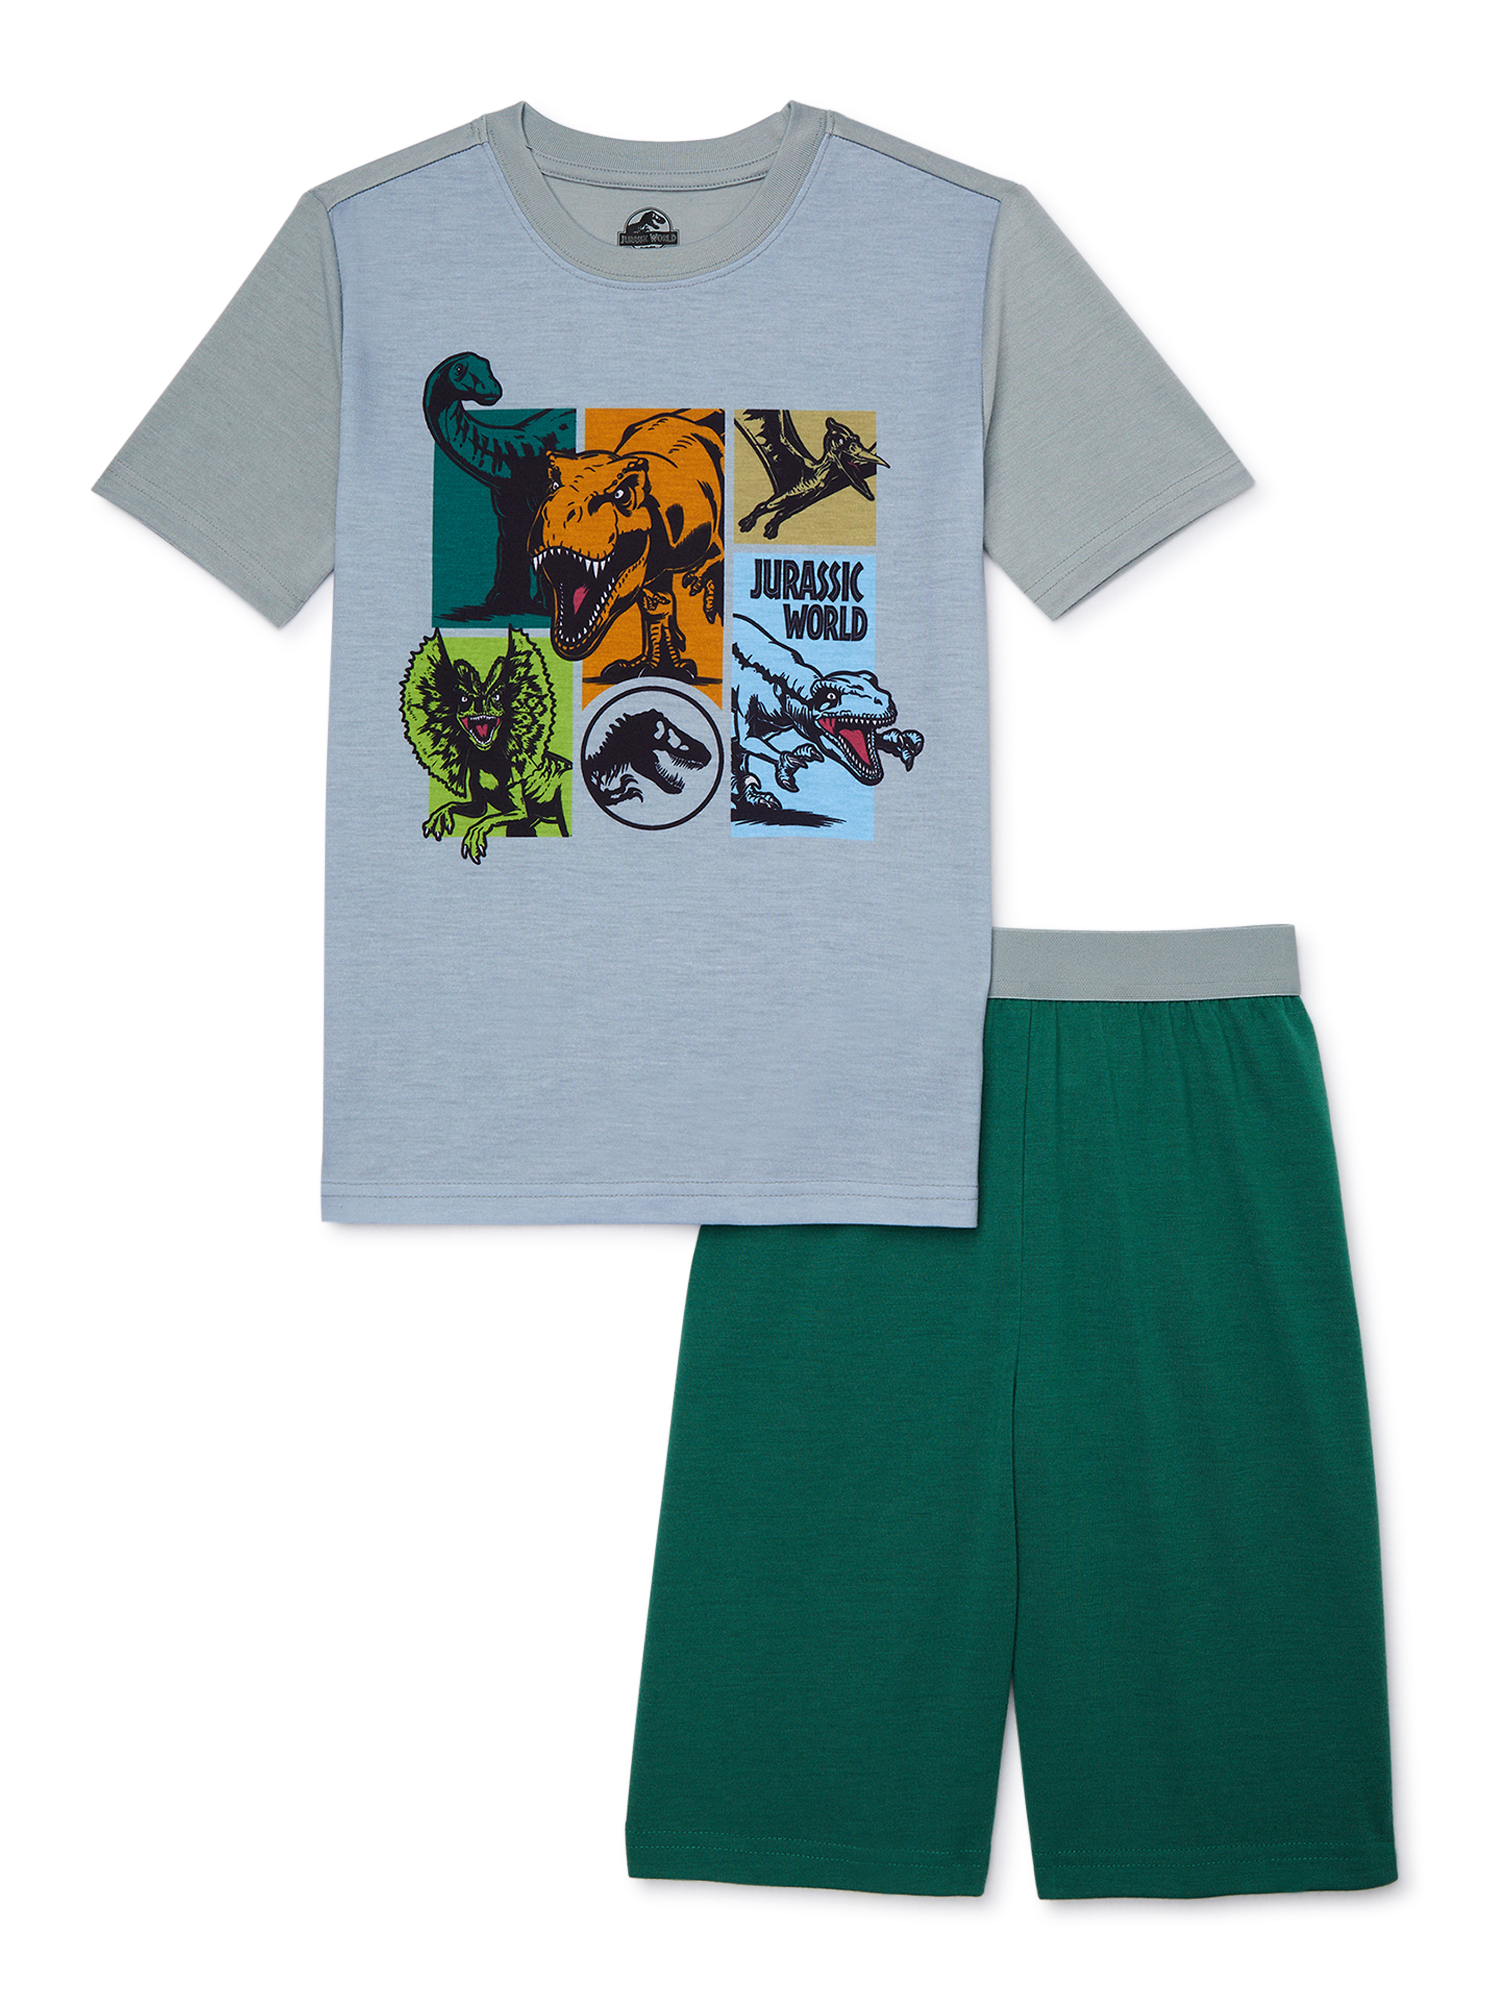 Jurassic Park Boys Short Sleeve and Shorts Pajama Set, 2-Piece, Sizes 4-12 - image 1 of 3